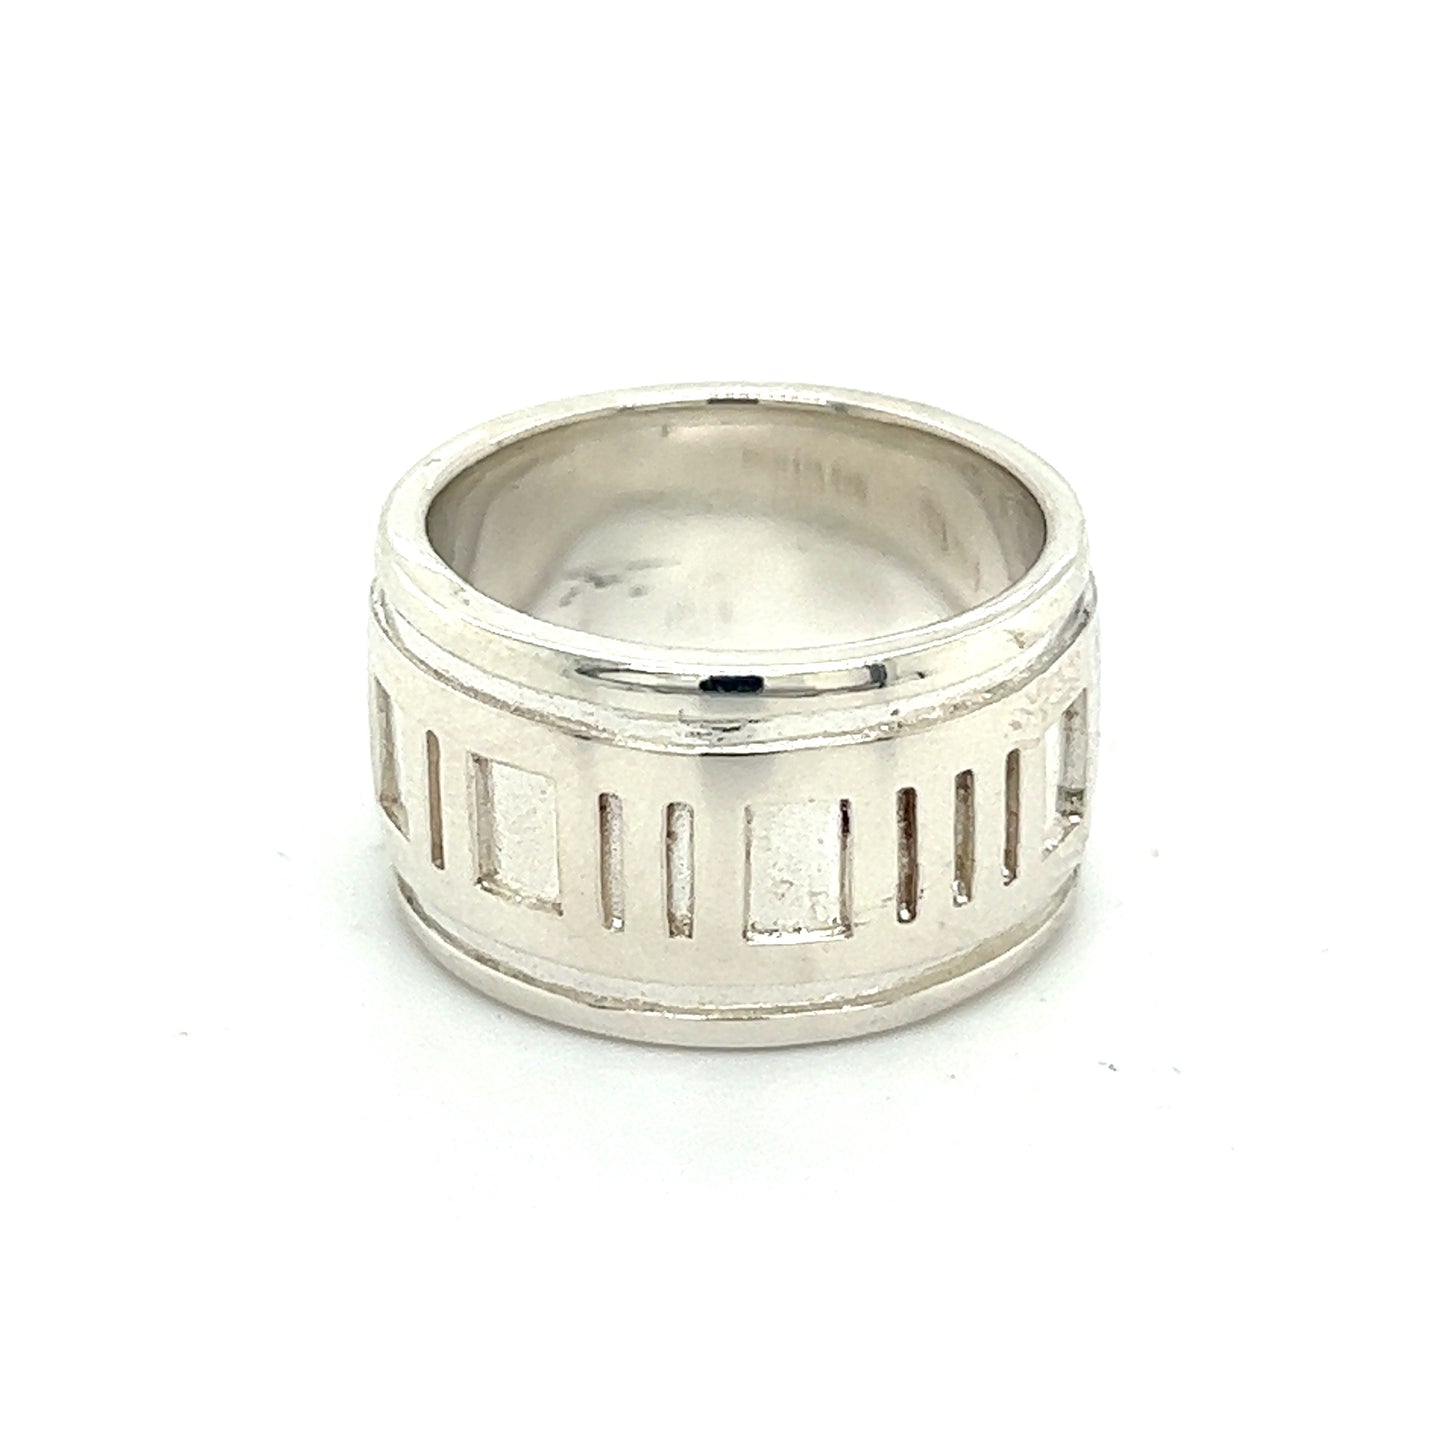 Tiffany & Co Estate Atlas Ring Size 4 Silver 11 mm TIF499 - Certified Fine Jewelry